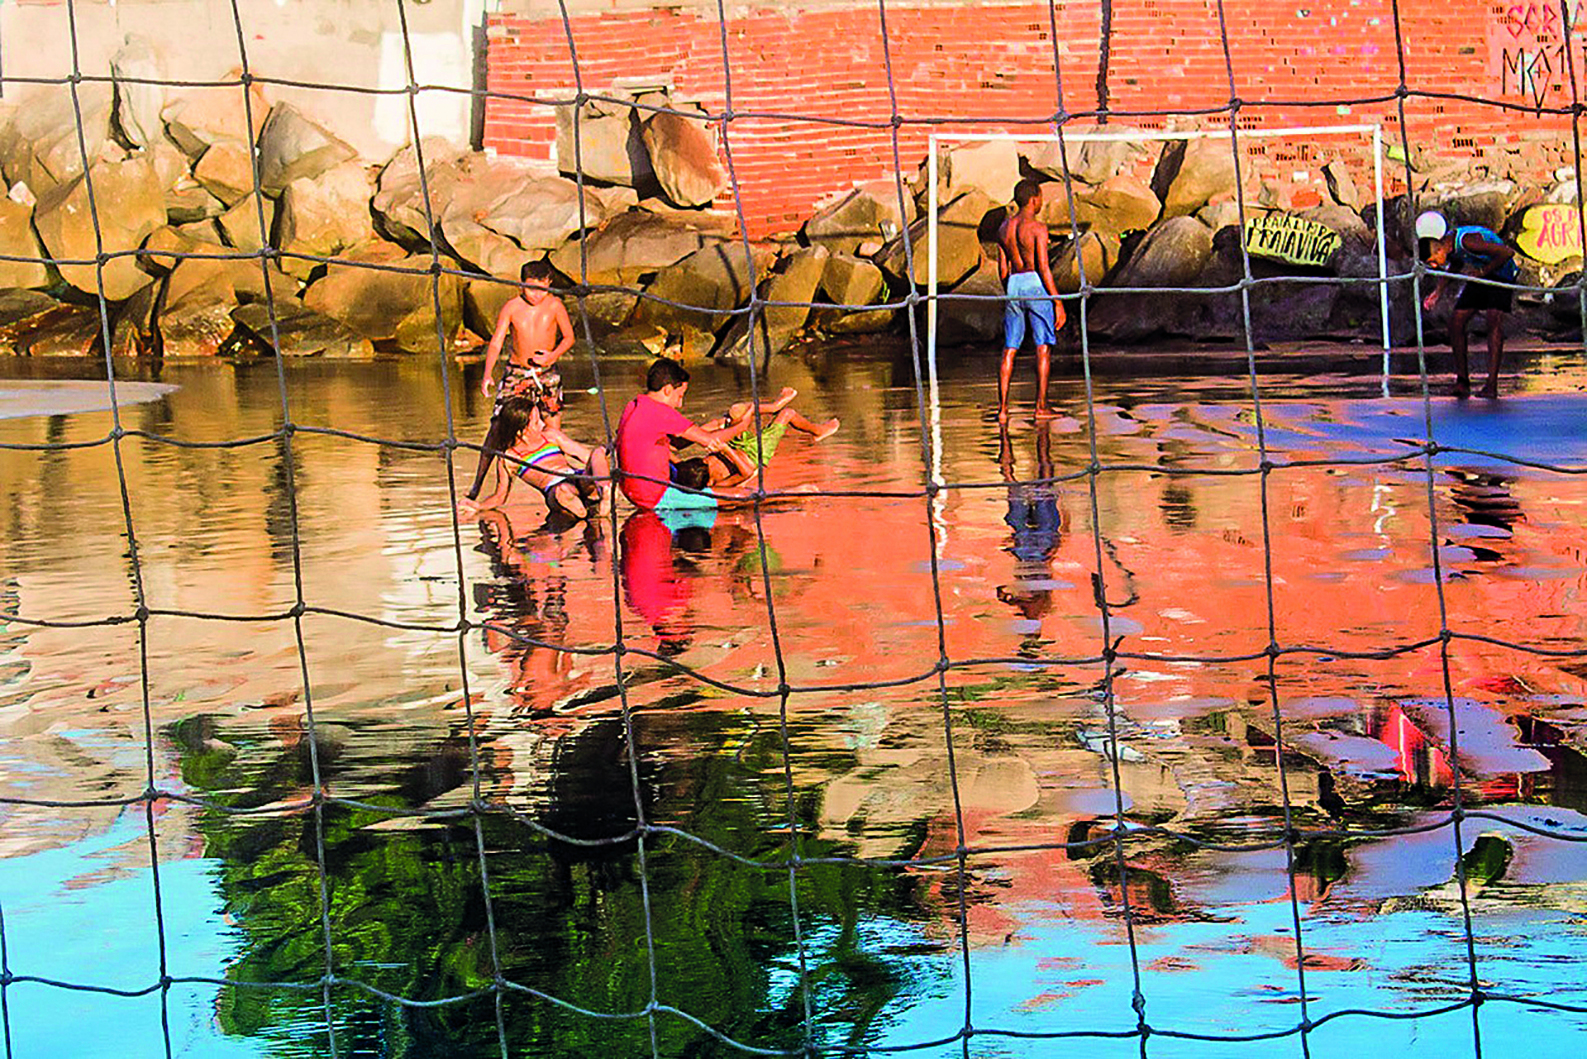 Fotografia. Crianças brincando em uma rua alagada. Na água, é possível observar o reflexo de uma árvore grande. Ao fundo, encostadas em um muro de tijolos, muitas pedras grandes. Toda a paisagem está encoberta por uma rede quadriculada.